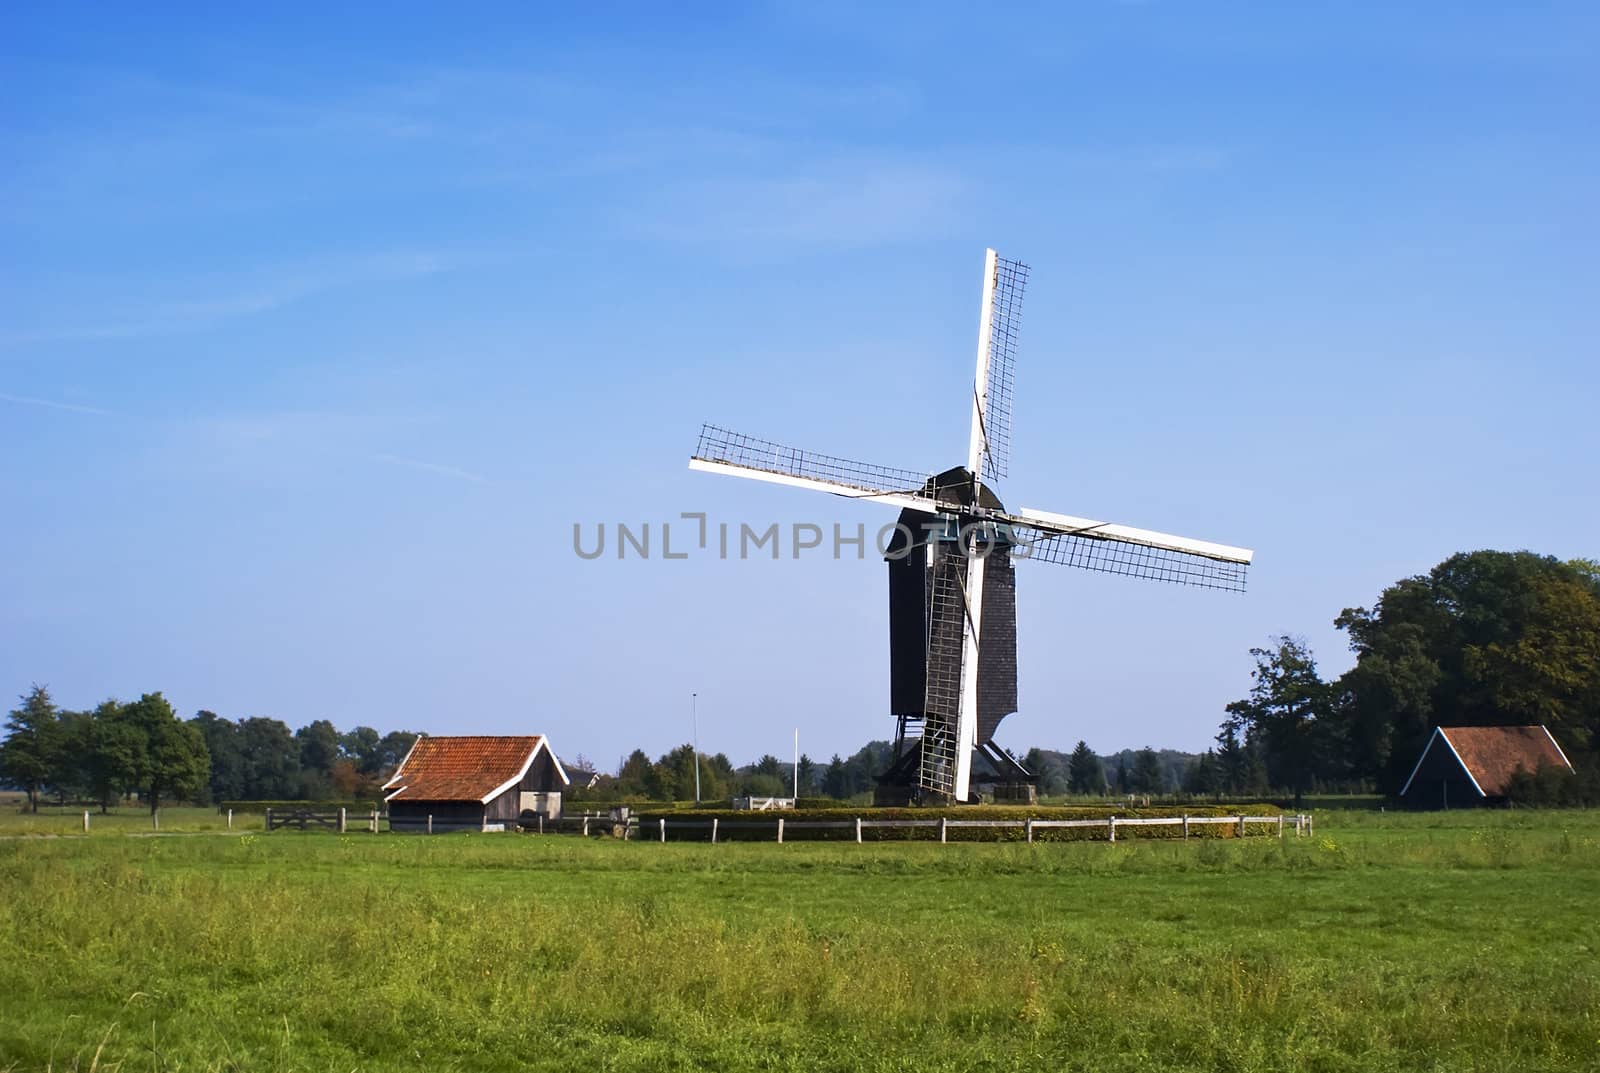 Dutch windmill in rural scene, green grass, blue sky.